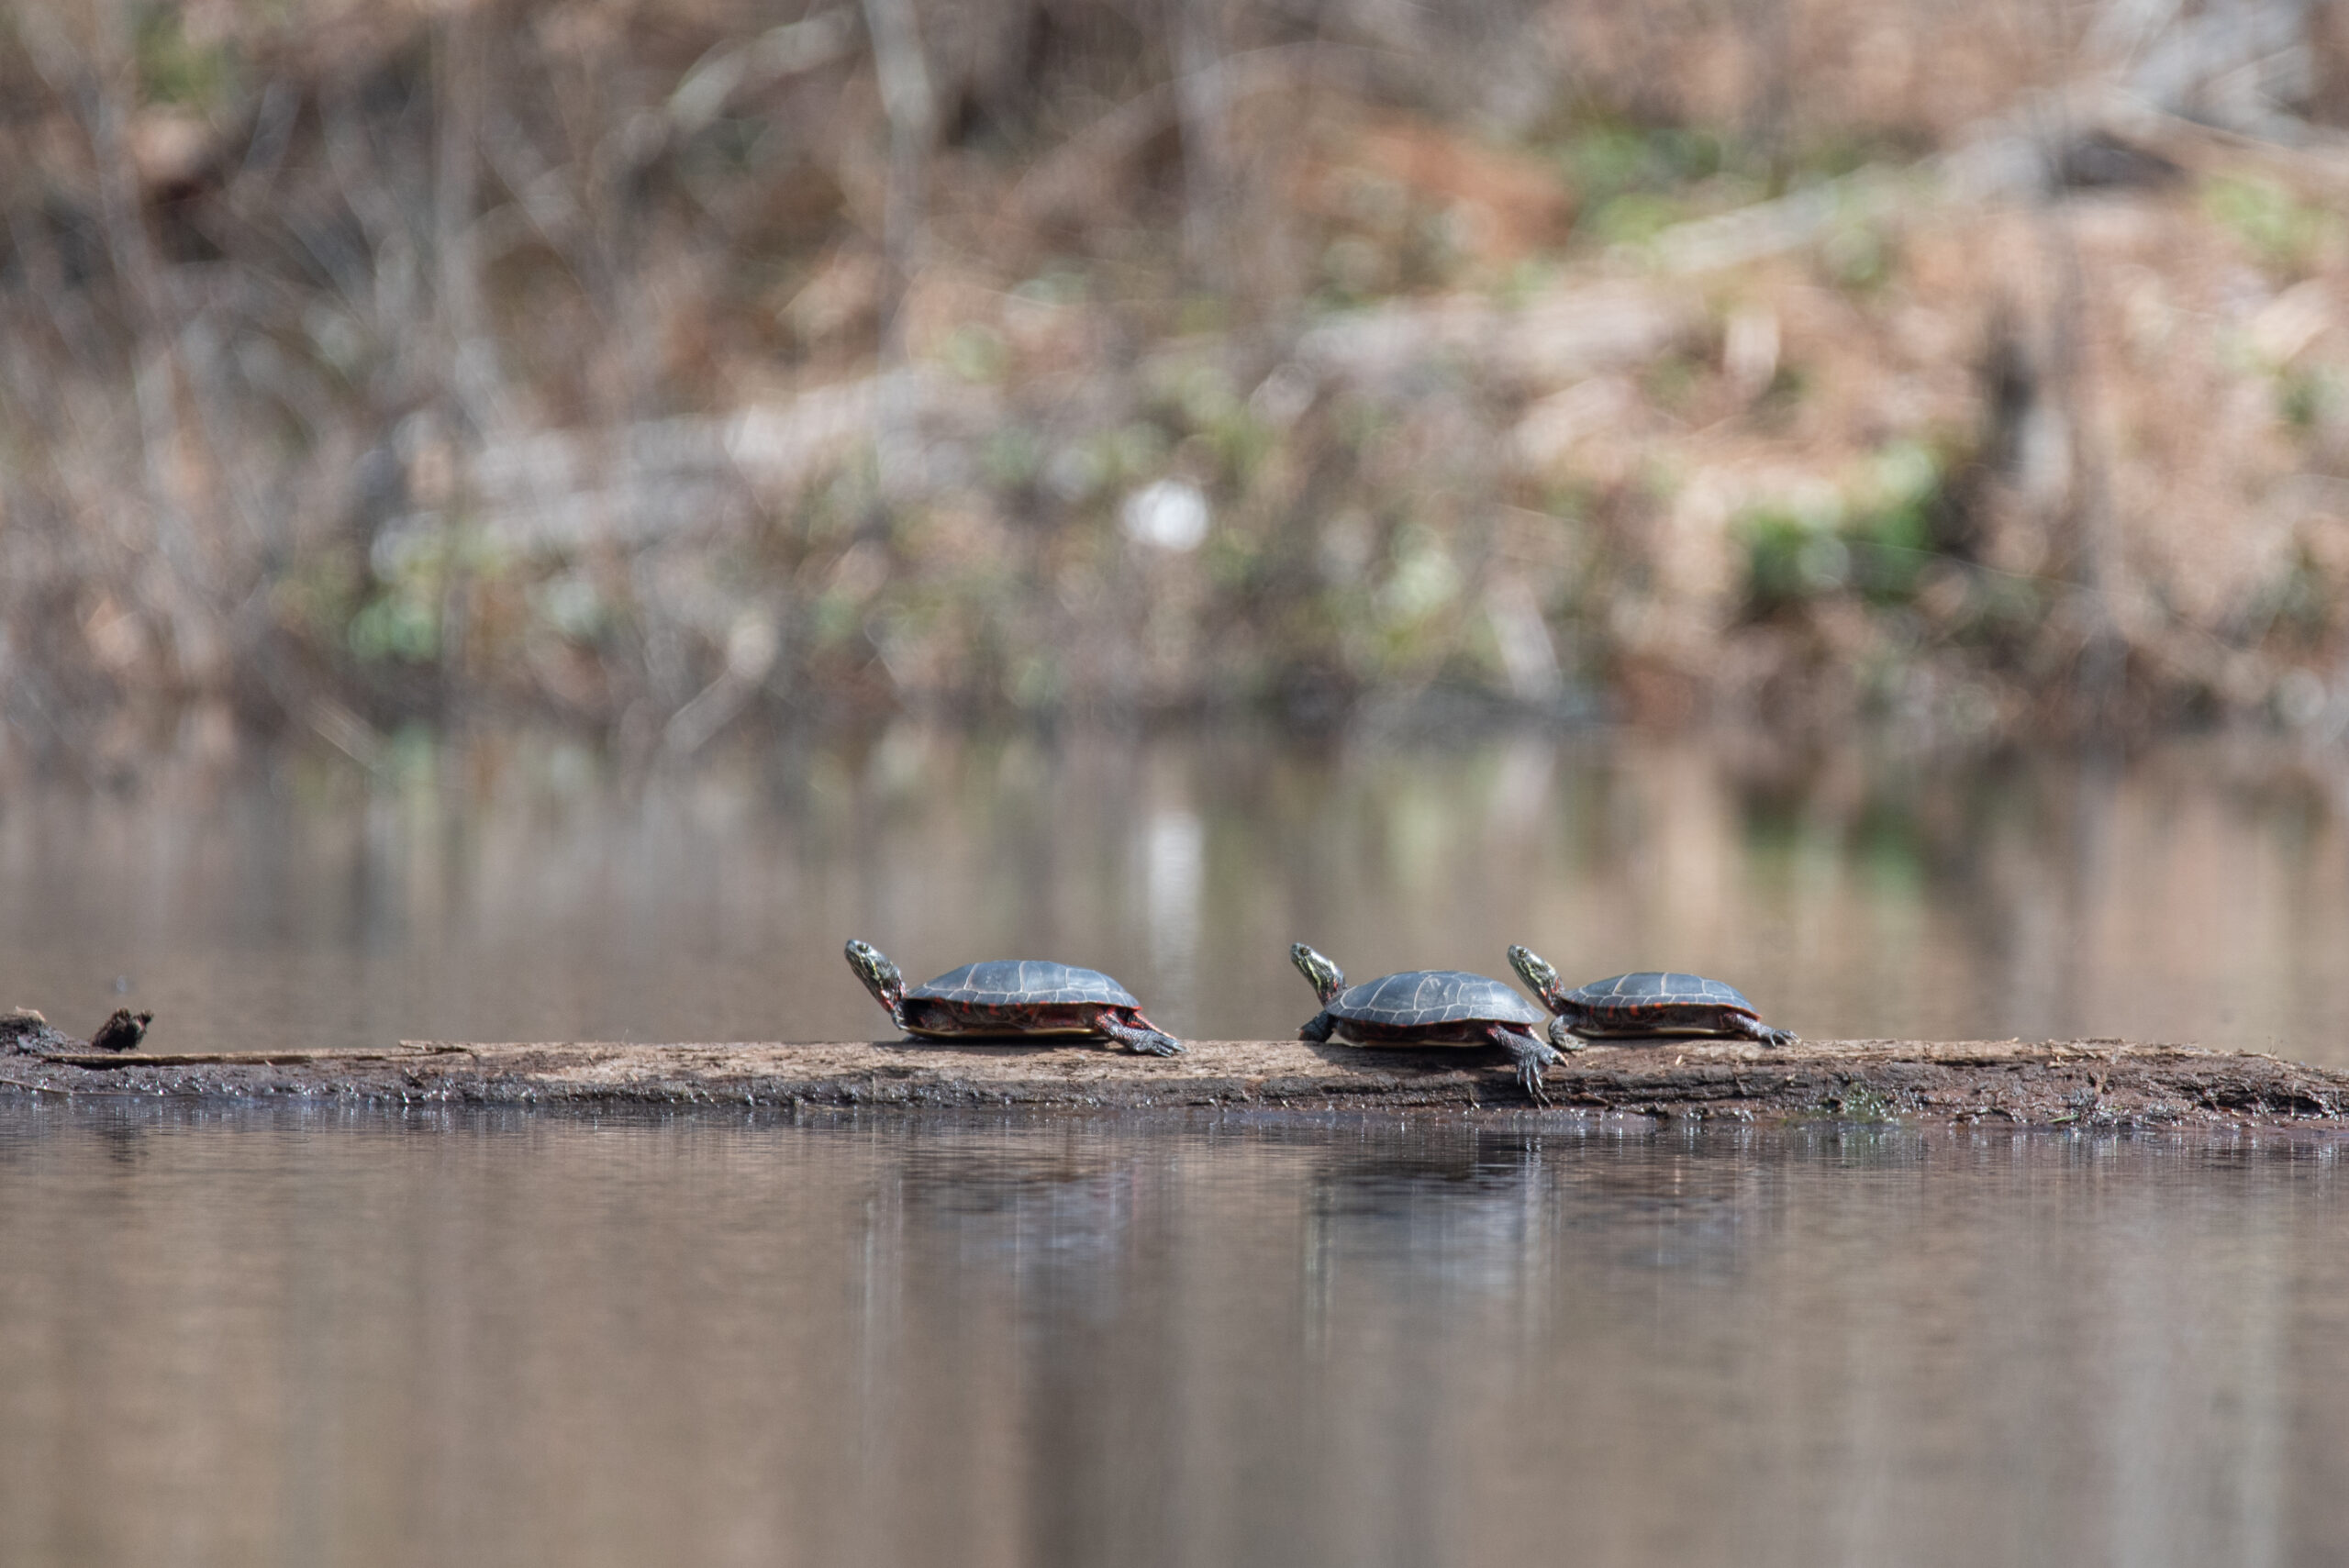 3 midland painted turtles on a log